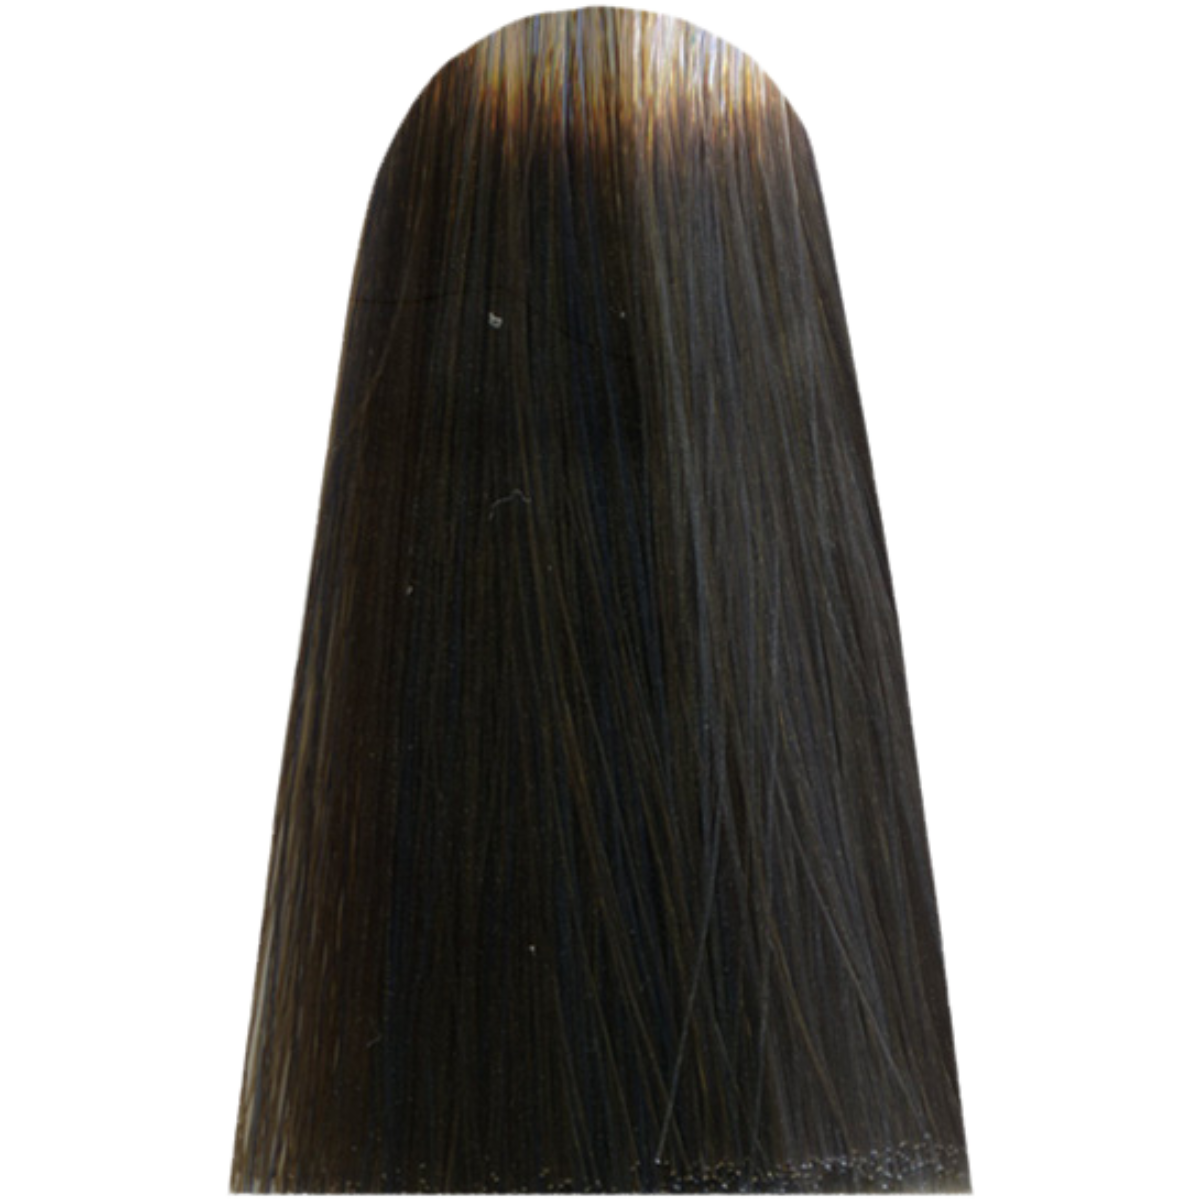 צבע שיער LIGHT.10 ASH ARTIC MOON מג`ירל בוהק MAJIREL GLOW צבע לשיער לוריאל 50 גרם